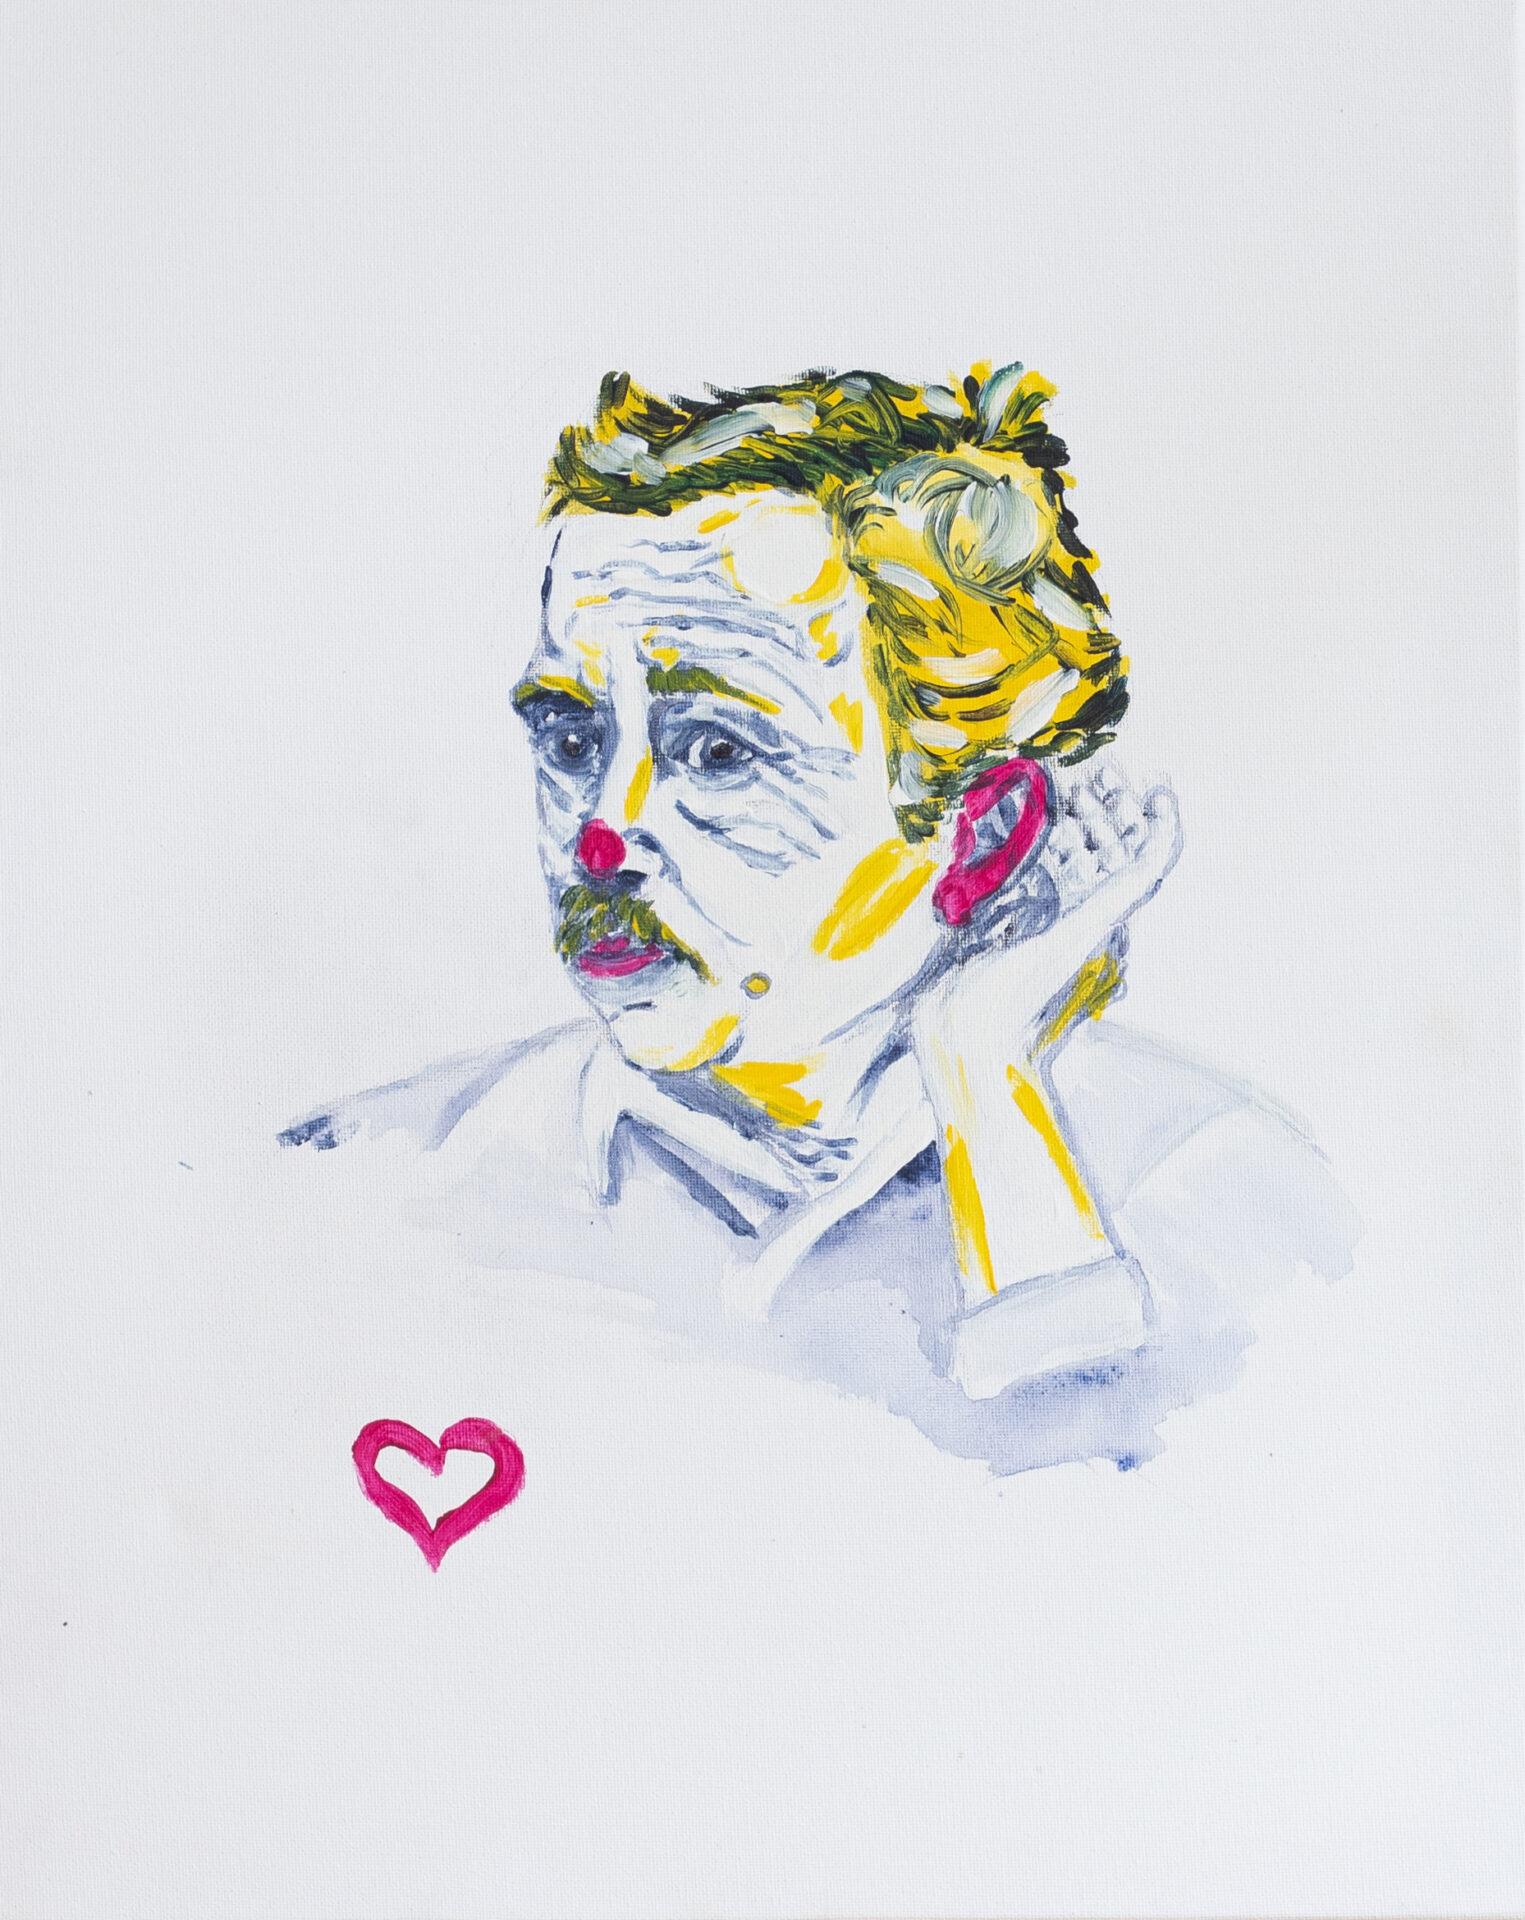 Vaclav Havel - Painting by Martina Bugárová